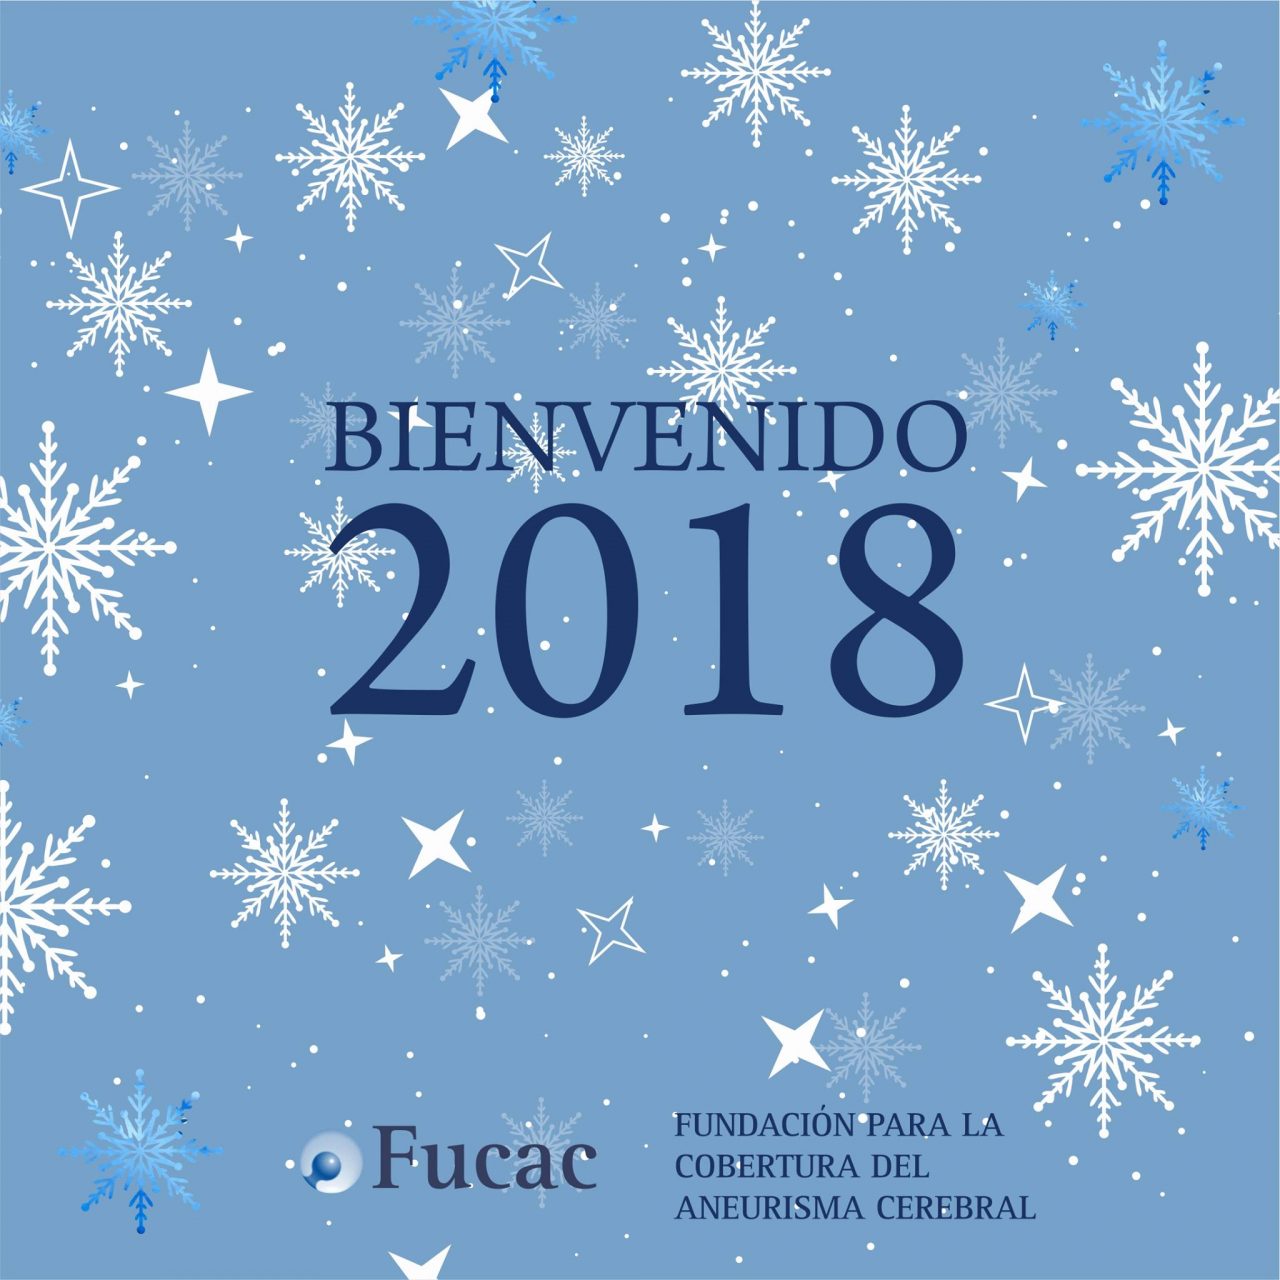 Bienvenido 2018: Fucac.